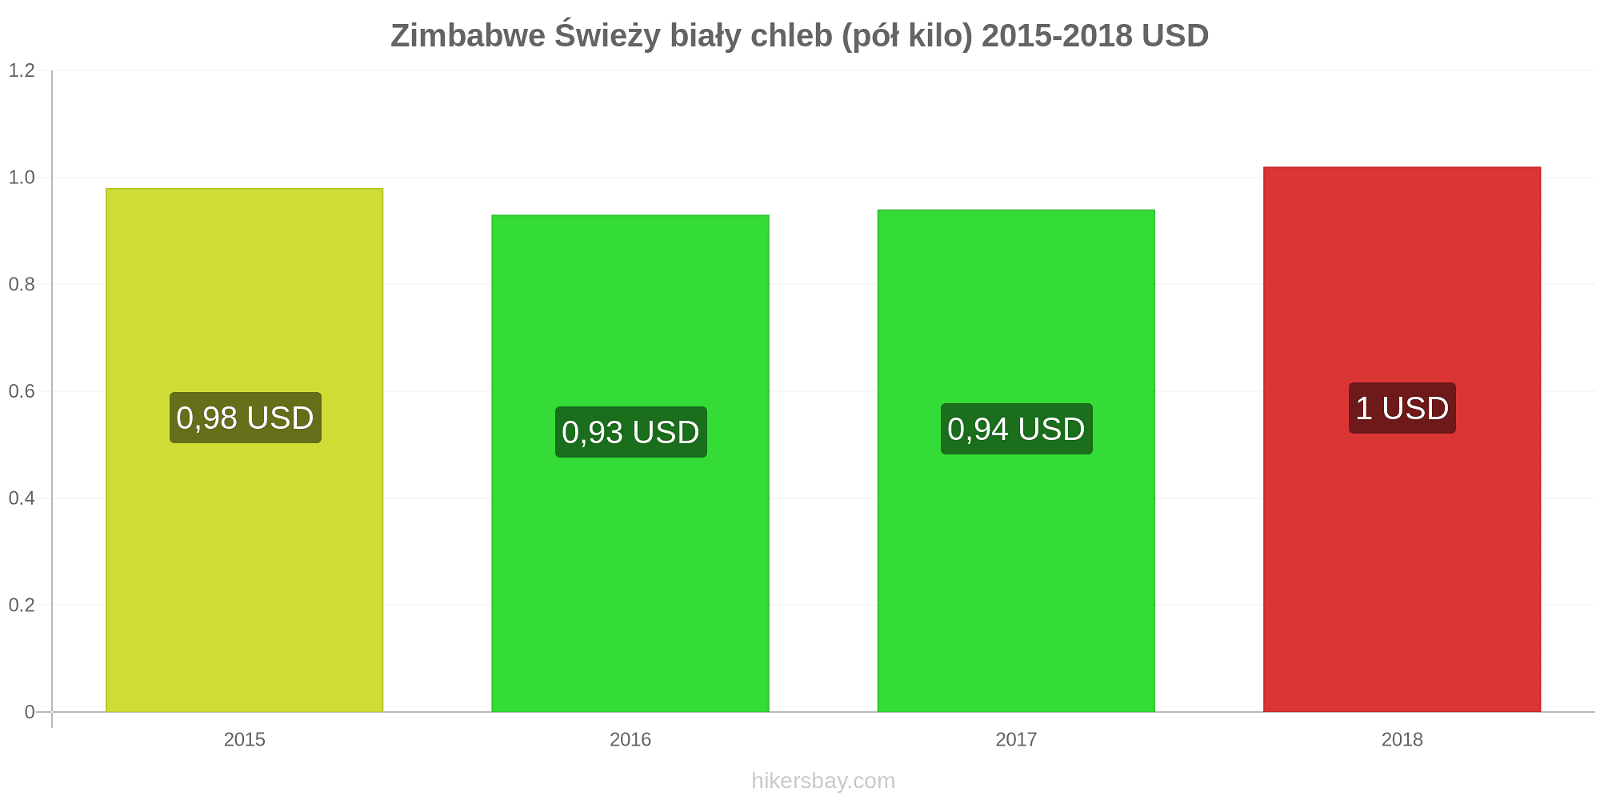 Zimbabwe zmiany cen Chleb pół kilo hikersbay.com